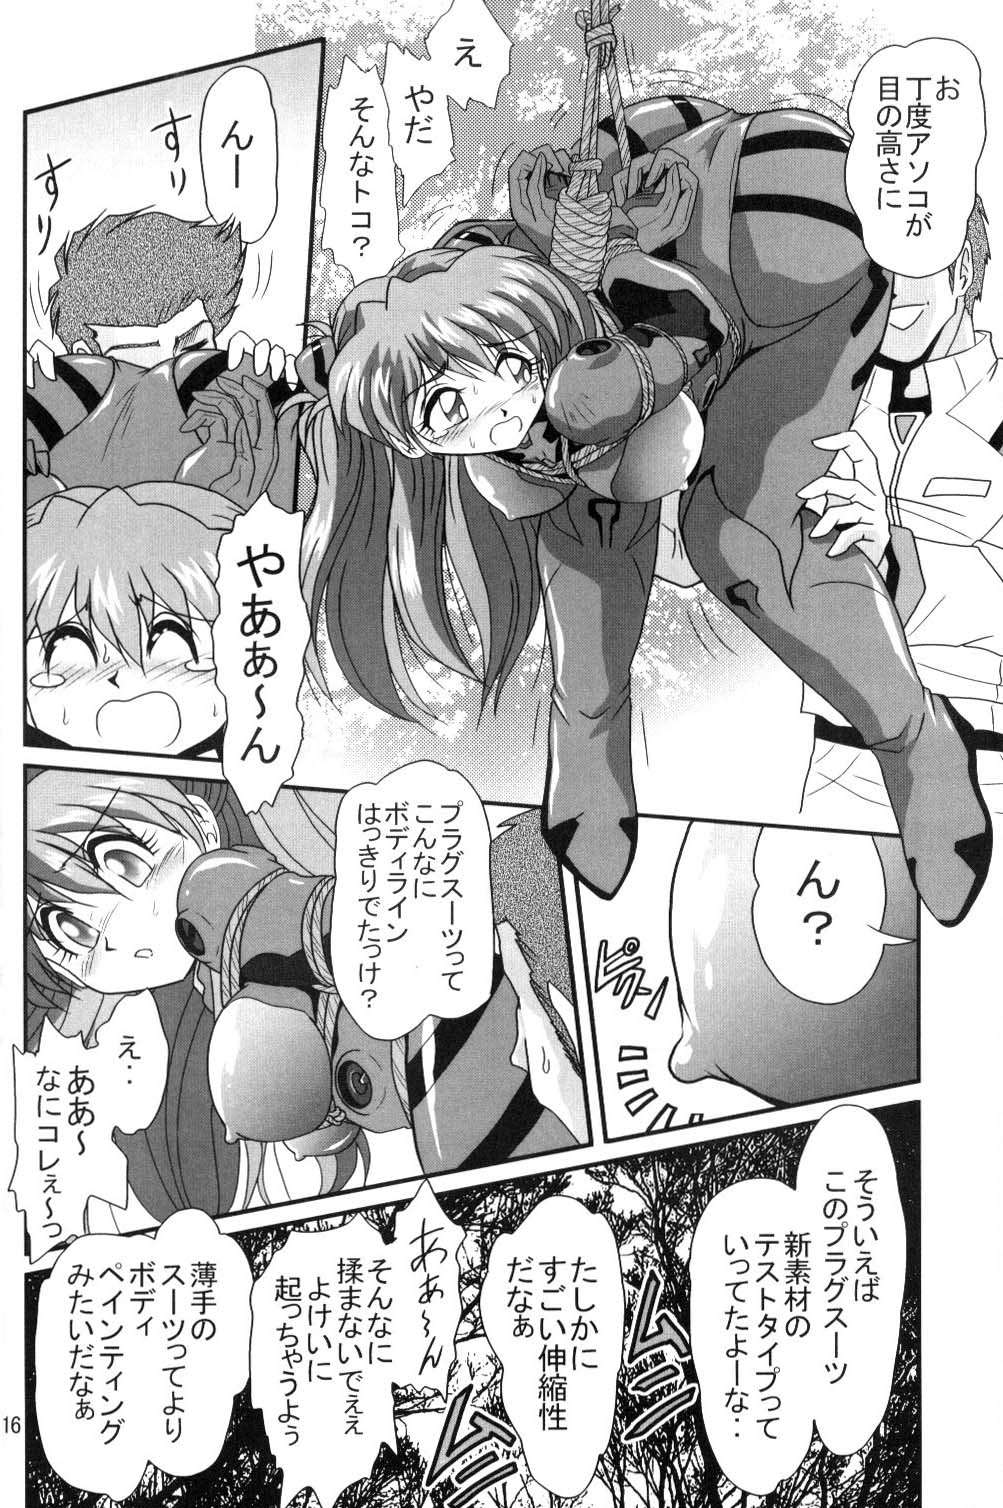 [Thirty Saver Street 2D Shooting (Maki Hideto, Sawara Kazumitsu, Yonige-ya No Kyou)] Second Uchuu Keikaku (Neon Genesis Evangelion) page 15 full